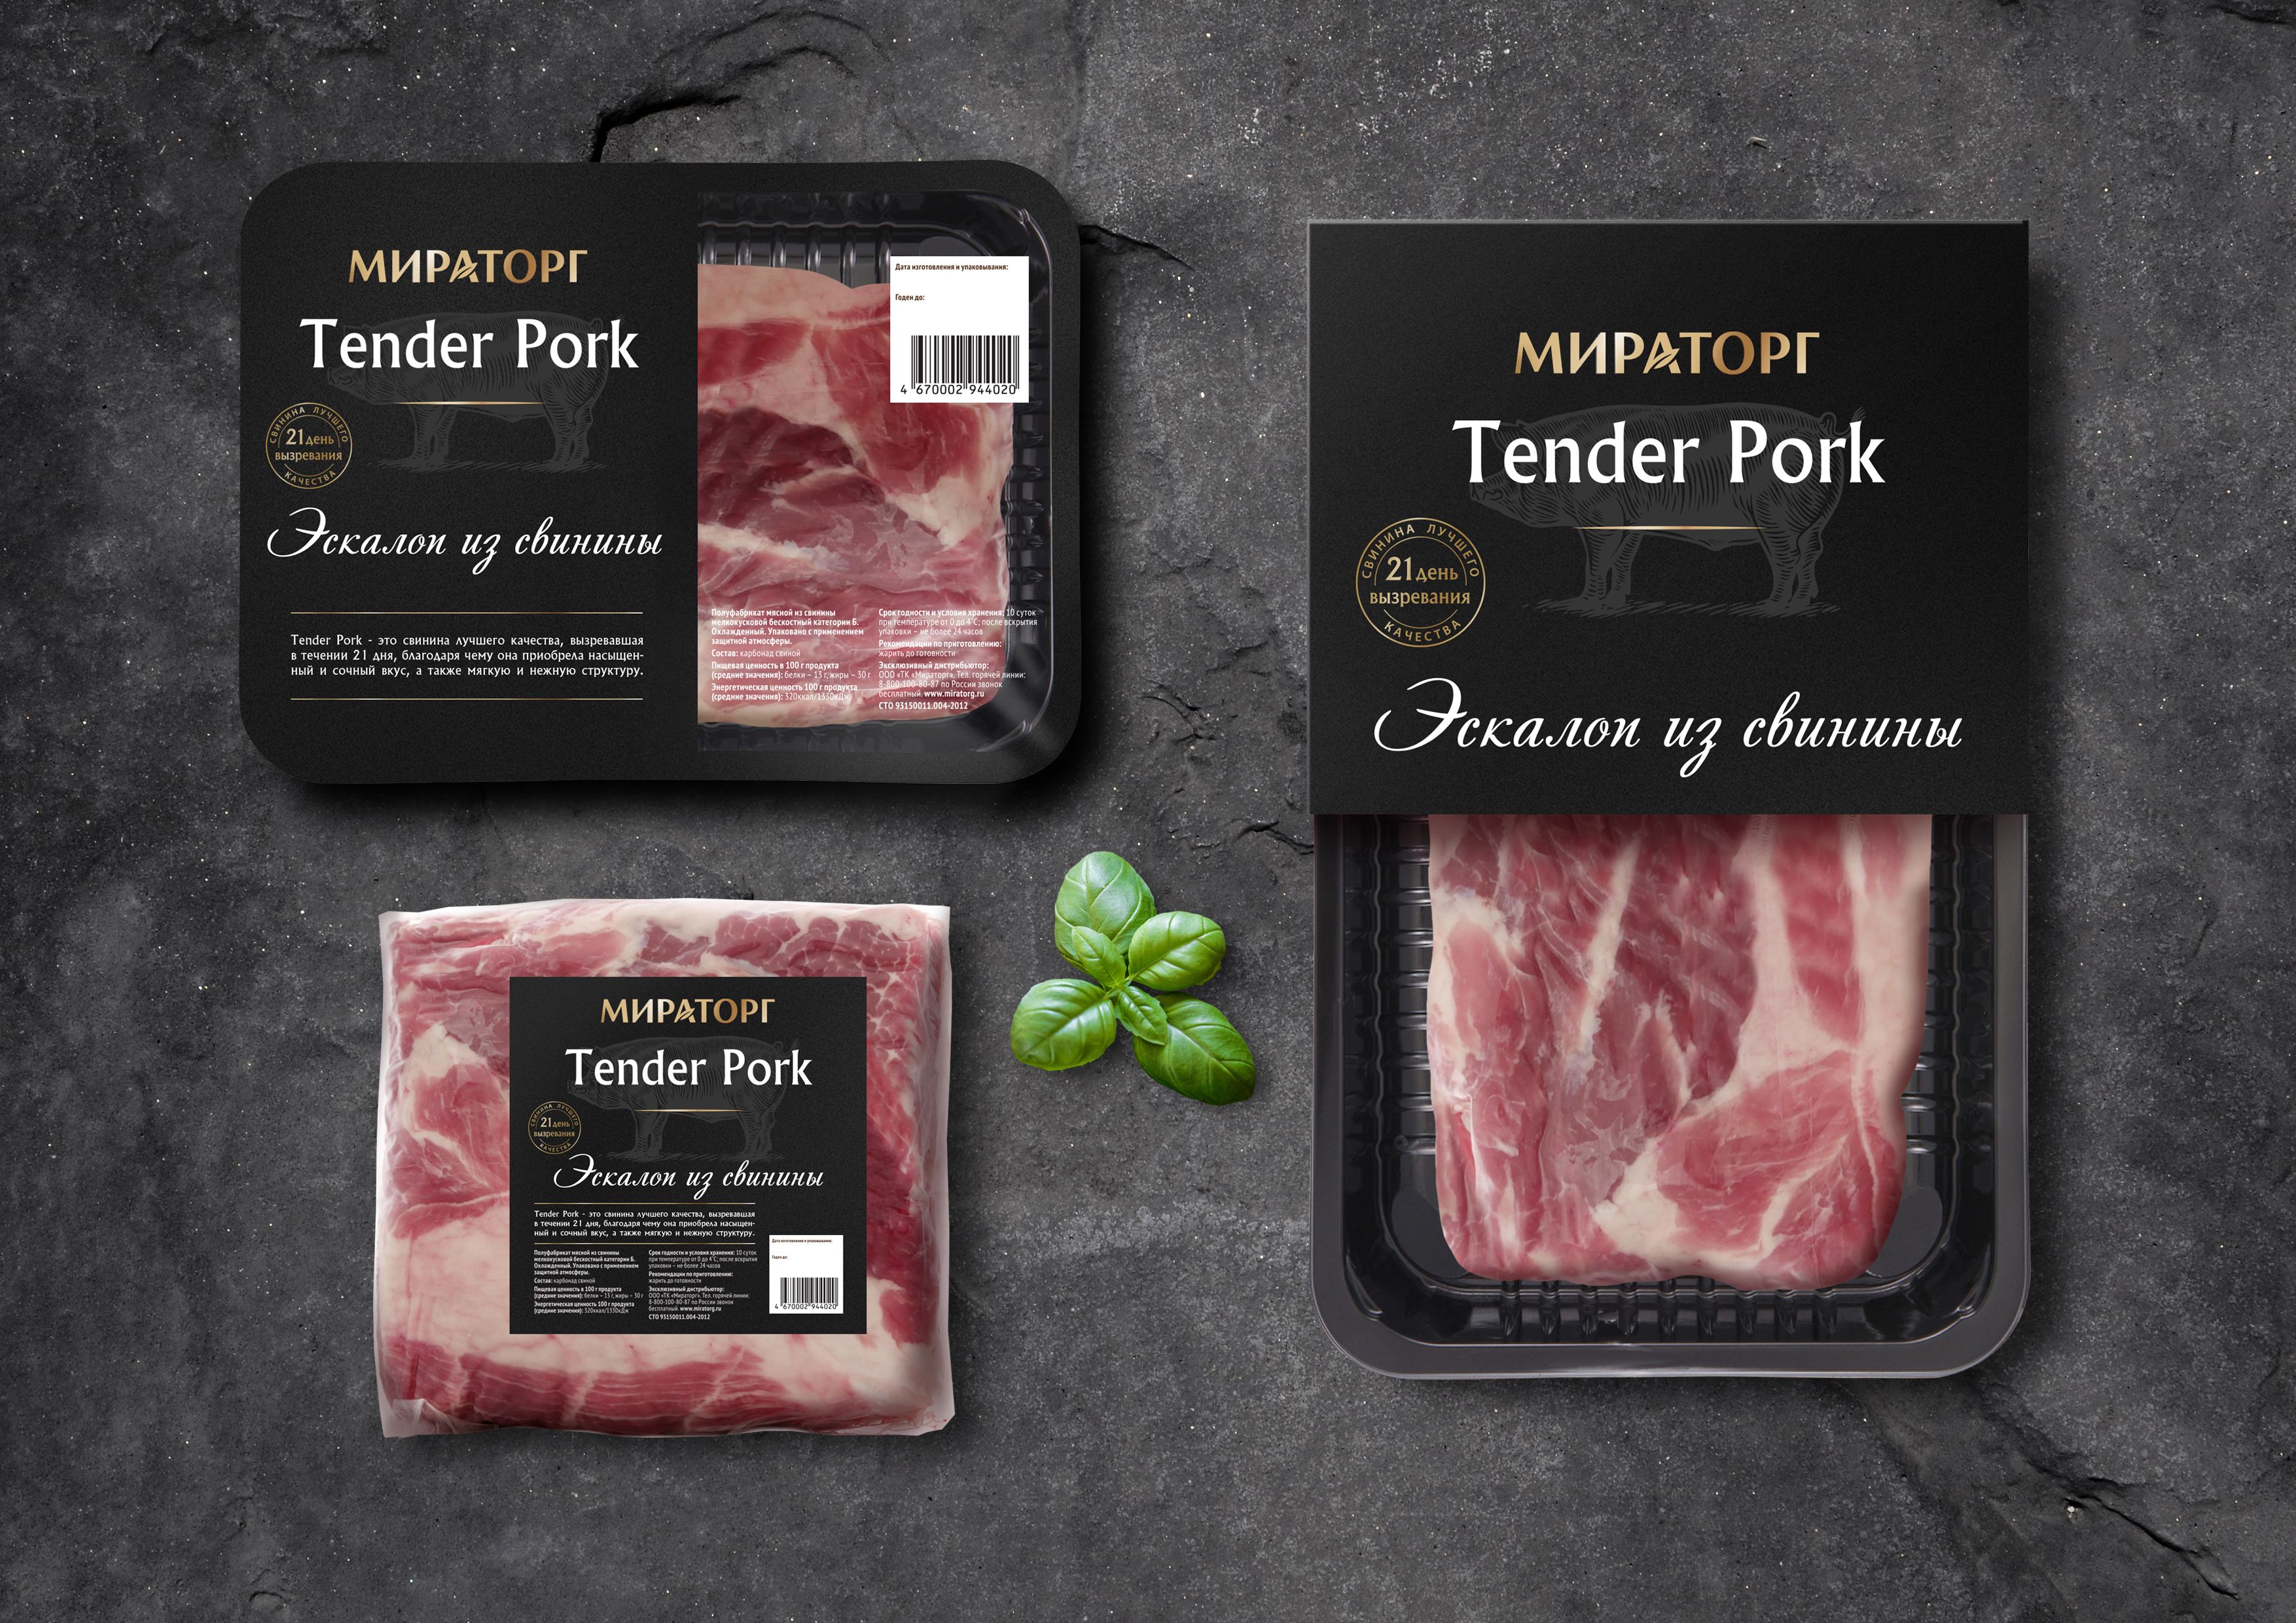 TP 3 - Tender Pork